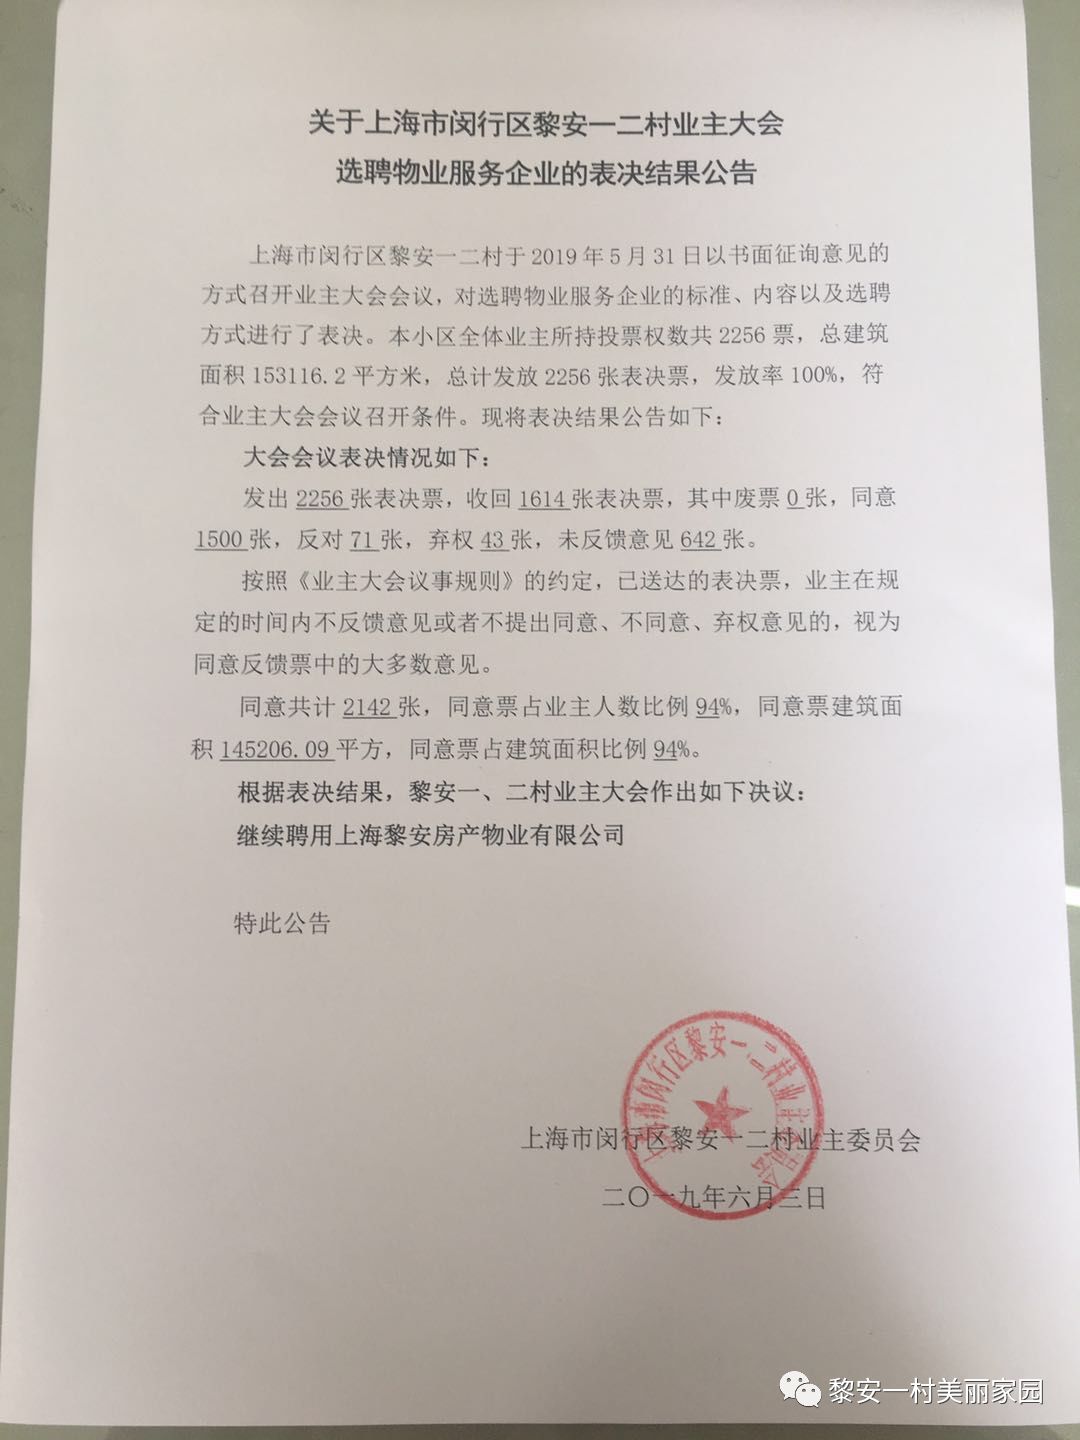 关于上海市闵行区黎安一二村业主大会选聘物业服务企业的表决结果公告